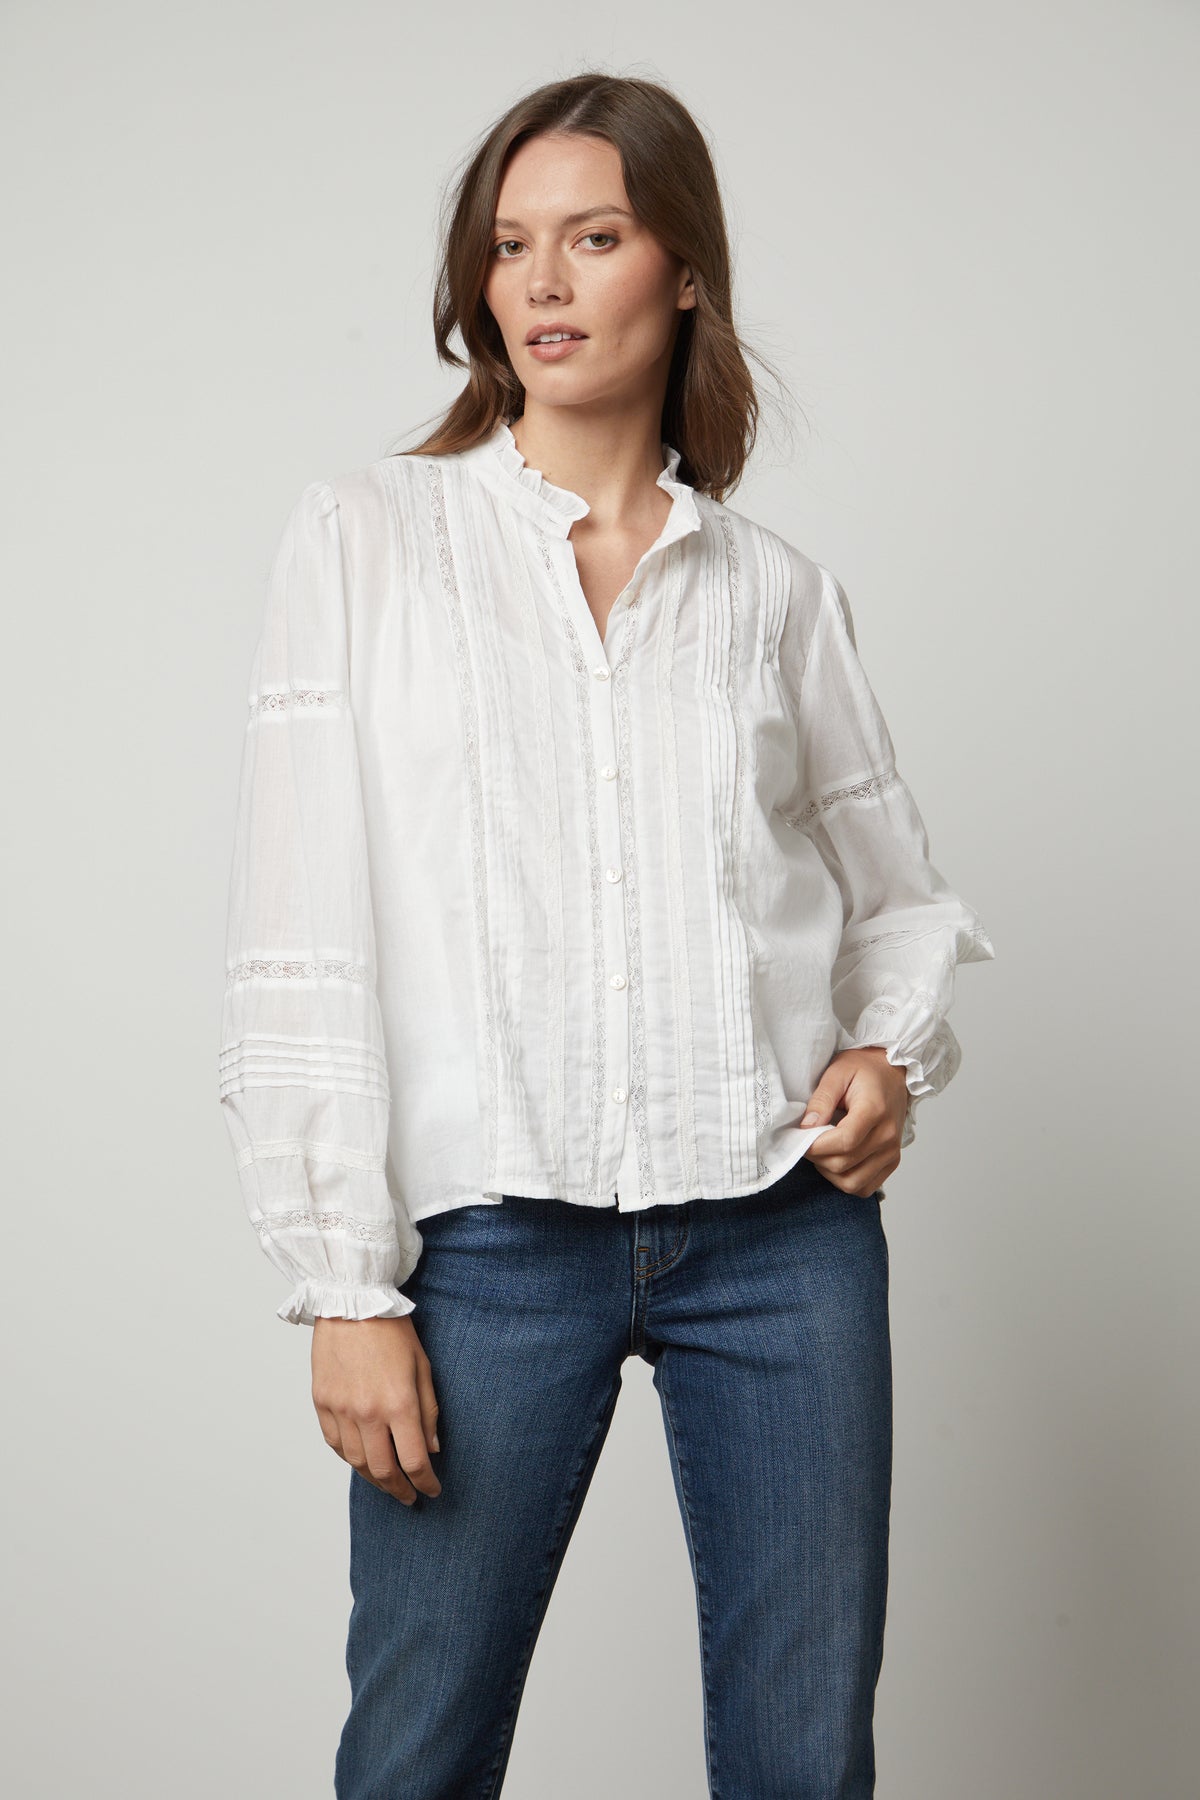 The model is wearing Velvet by Graham & Spencer jeans and a Velvet by Graham & Spencer white blouse.-26834995478721